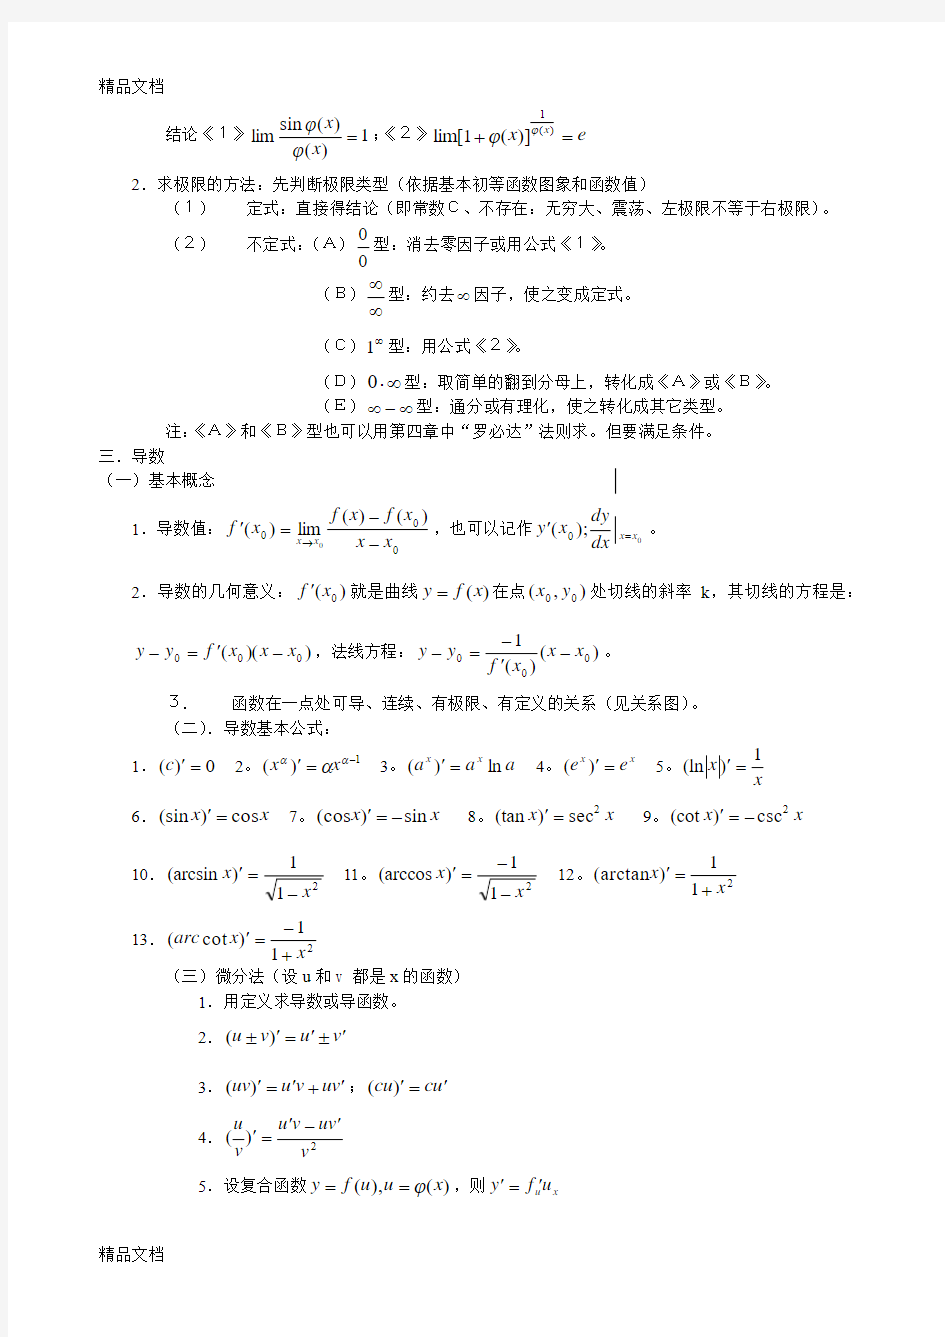 (整理)高等数学基本公式概念和方法